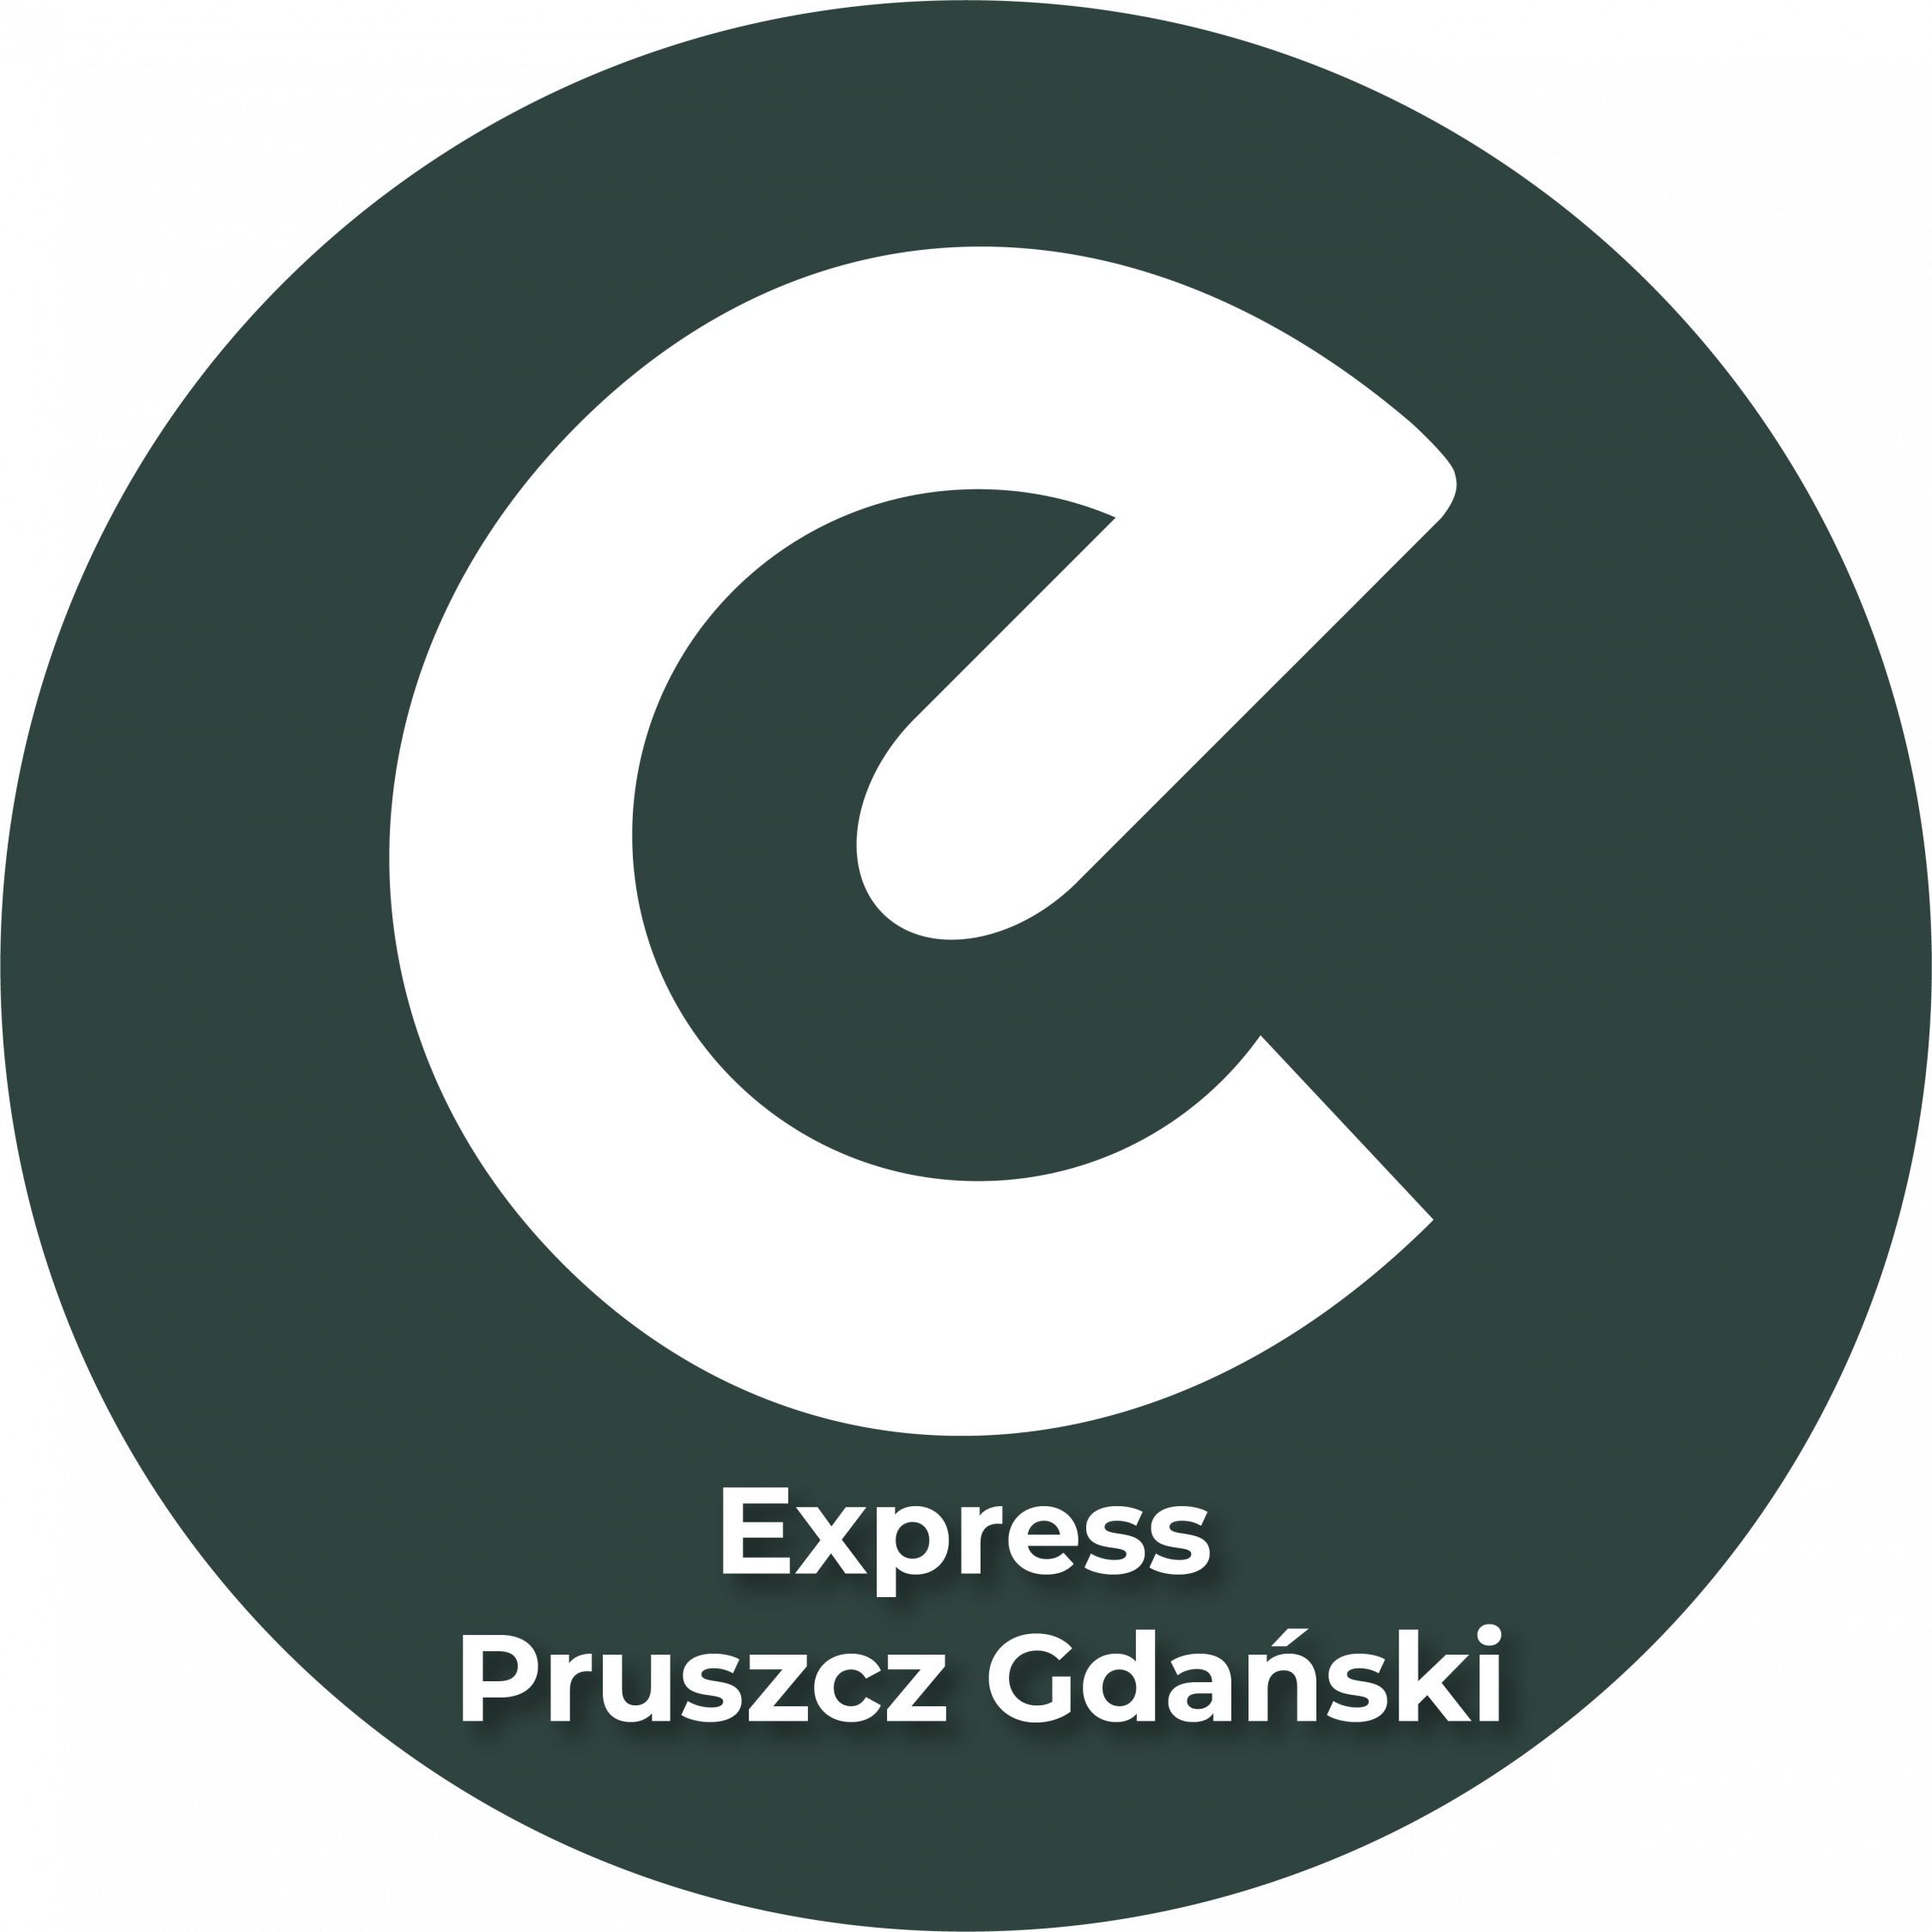 Express Pruszcz Gdański - najszybszy portal informacyjny w Pruszczu Gdańskim